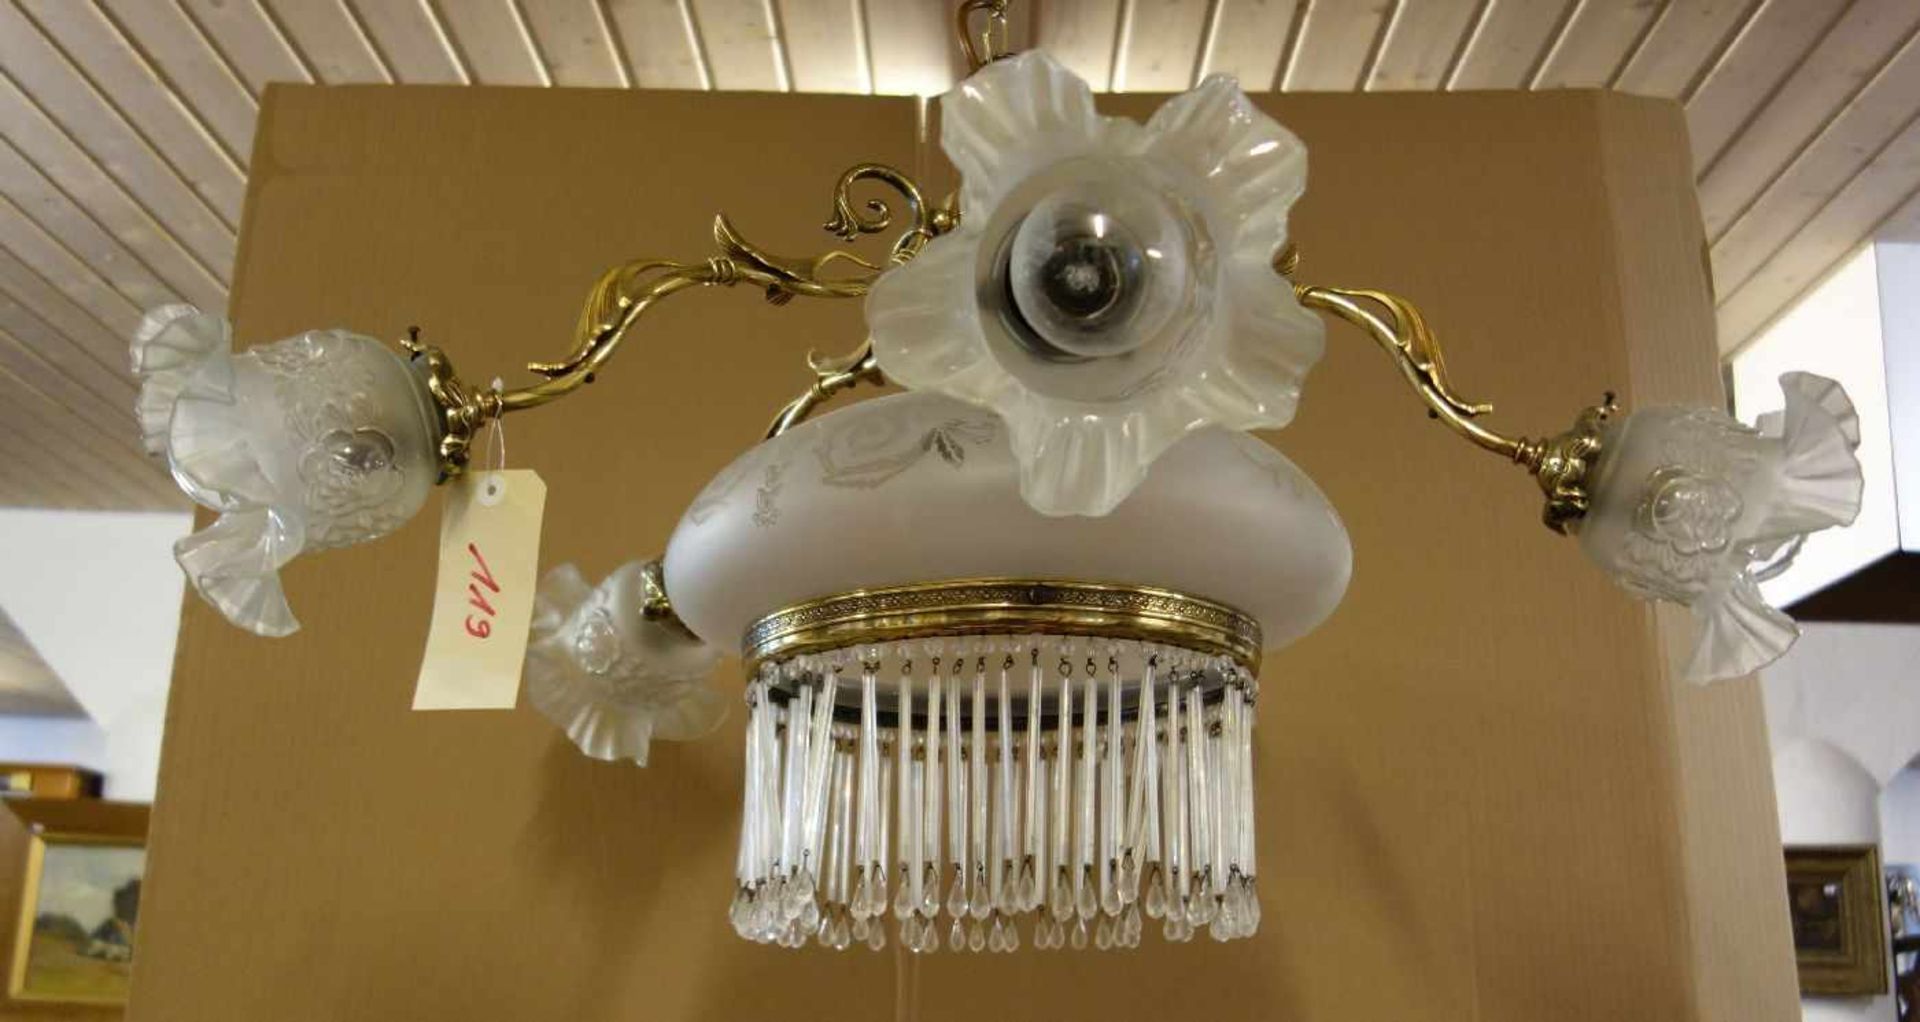 LAMPE / DECKENLEUCHTER im Stil der Zeit um 1900. Bronze-Gelbguss, sechsflammig elektrifiziert. - Bild 2 aus 4